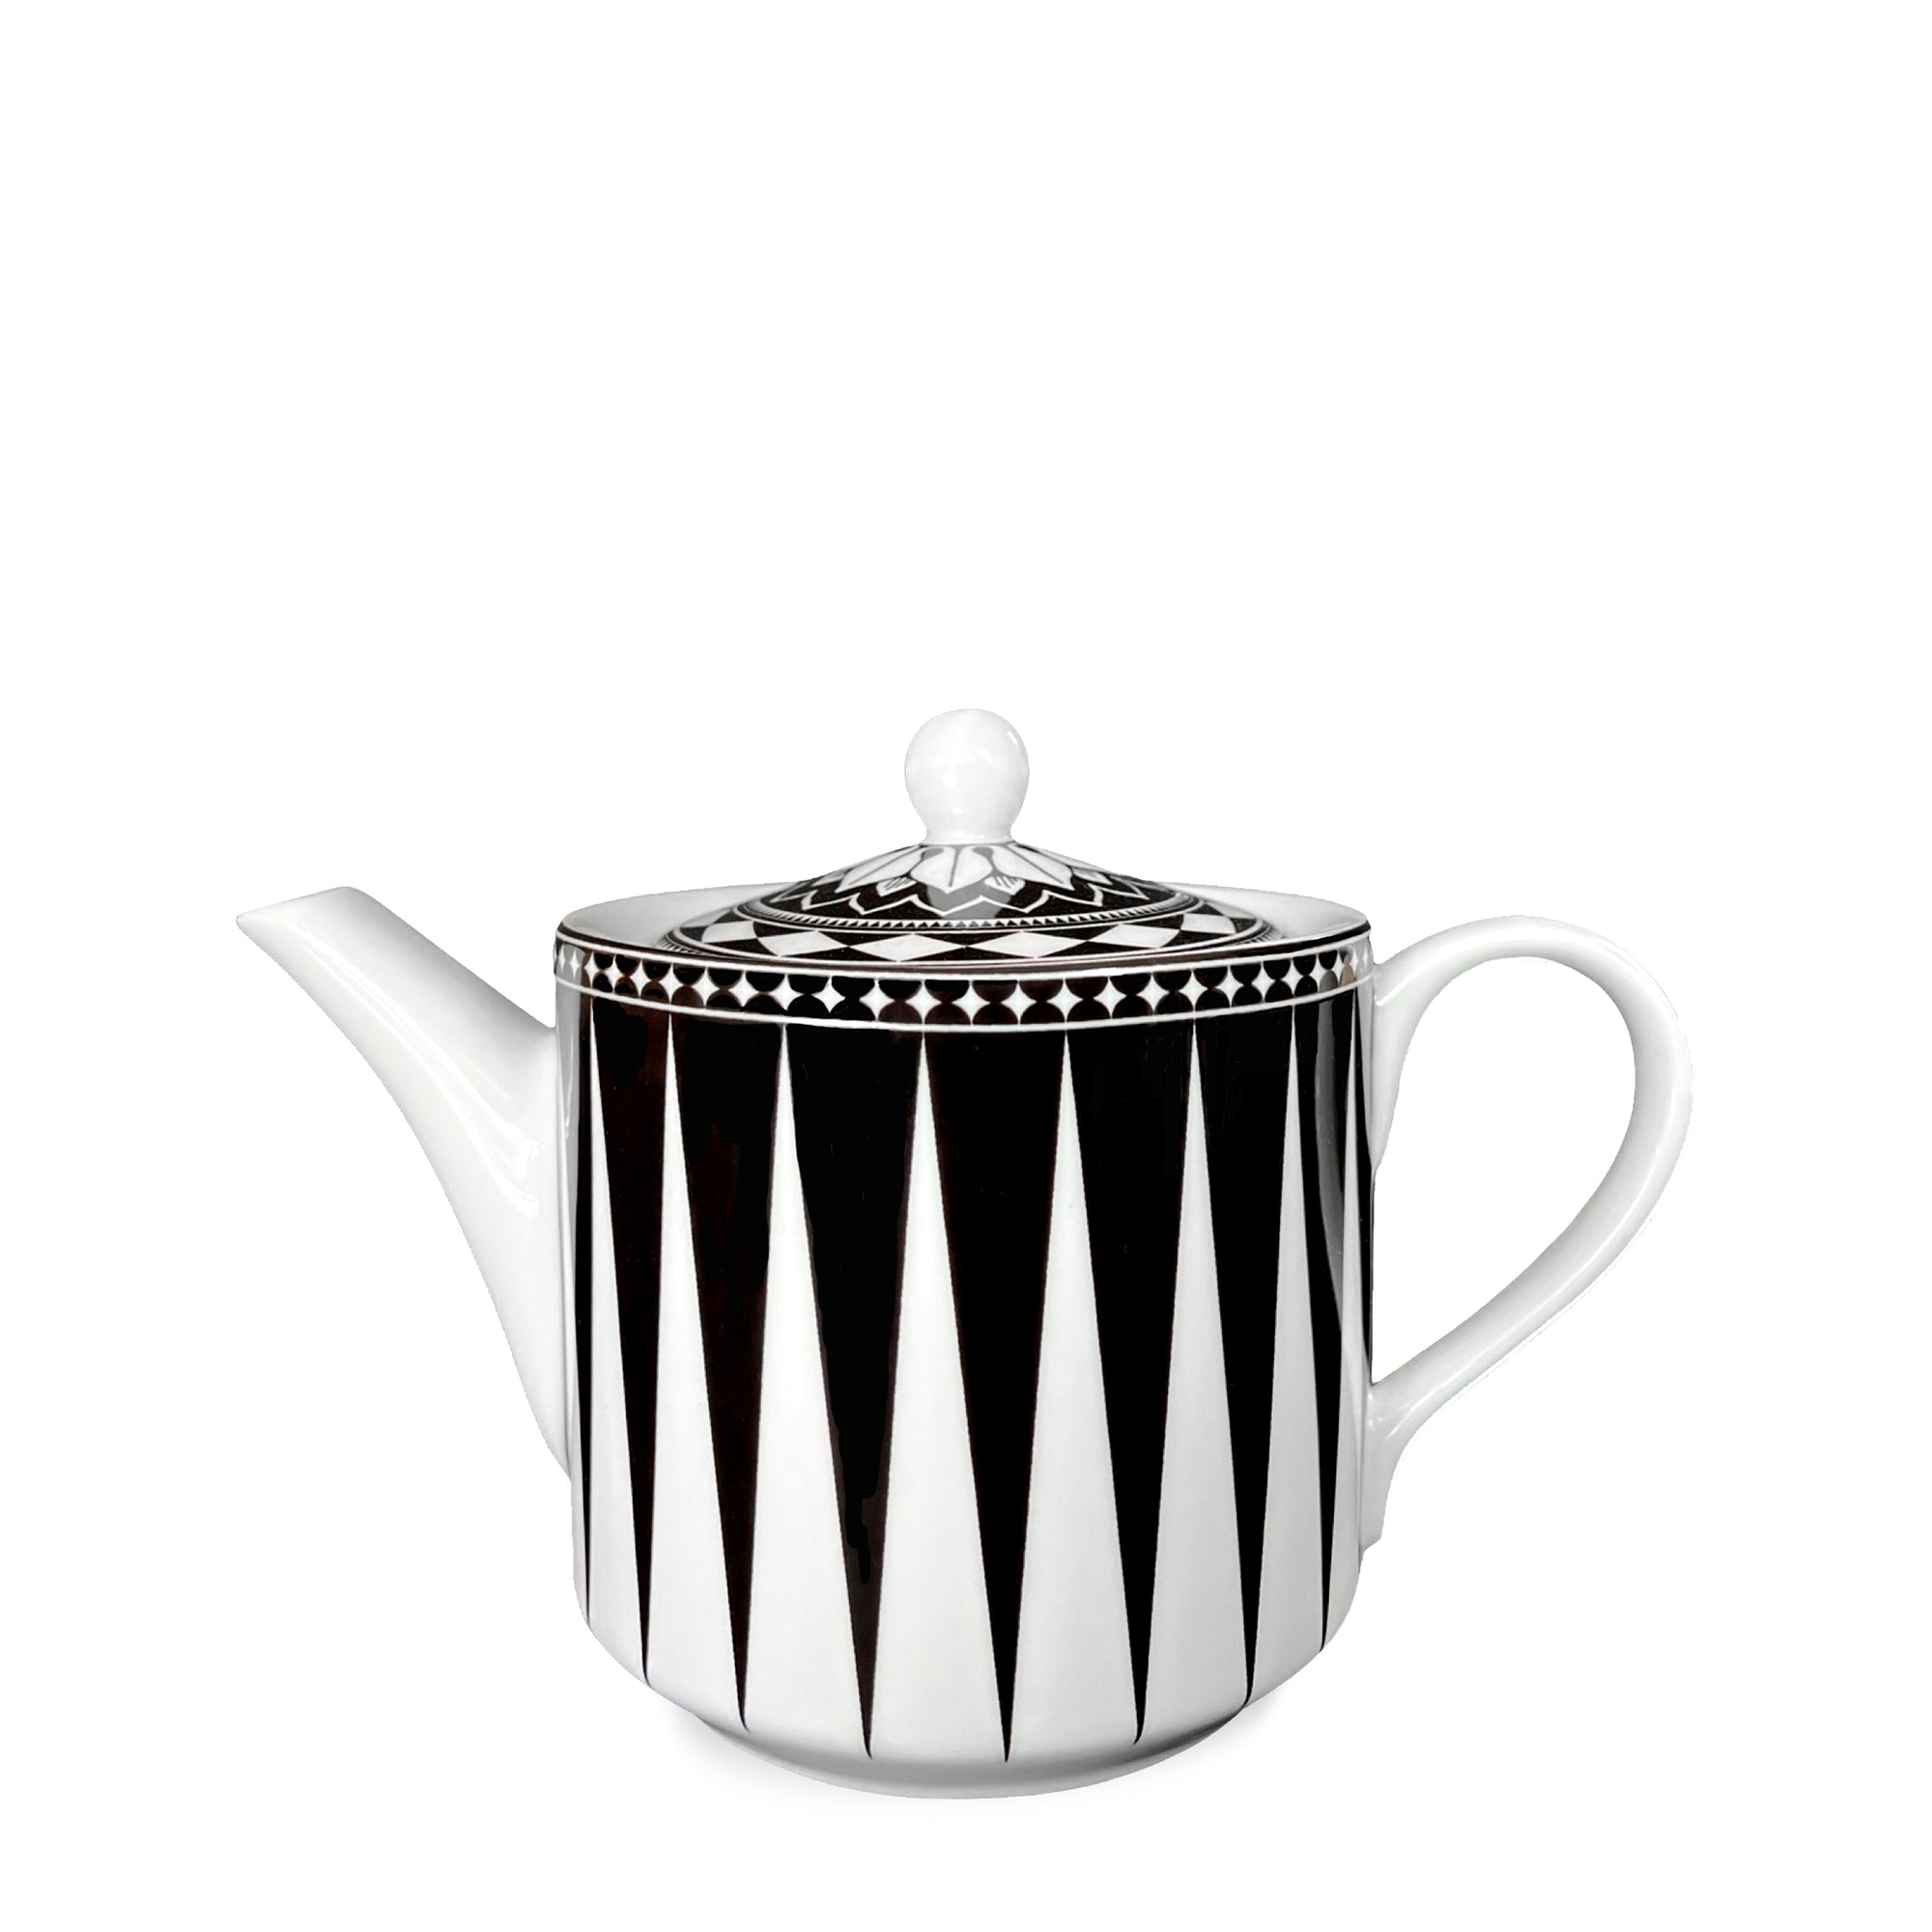 Marrakech Teapot by Caskata